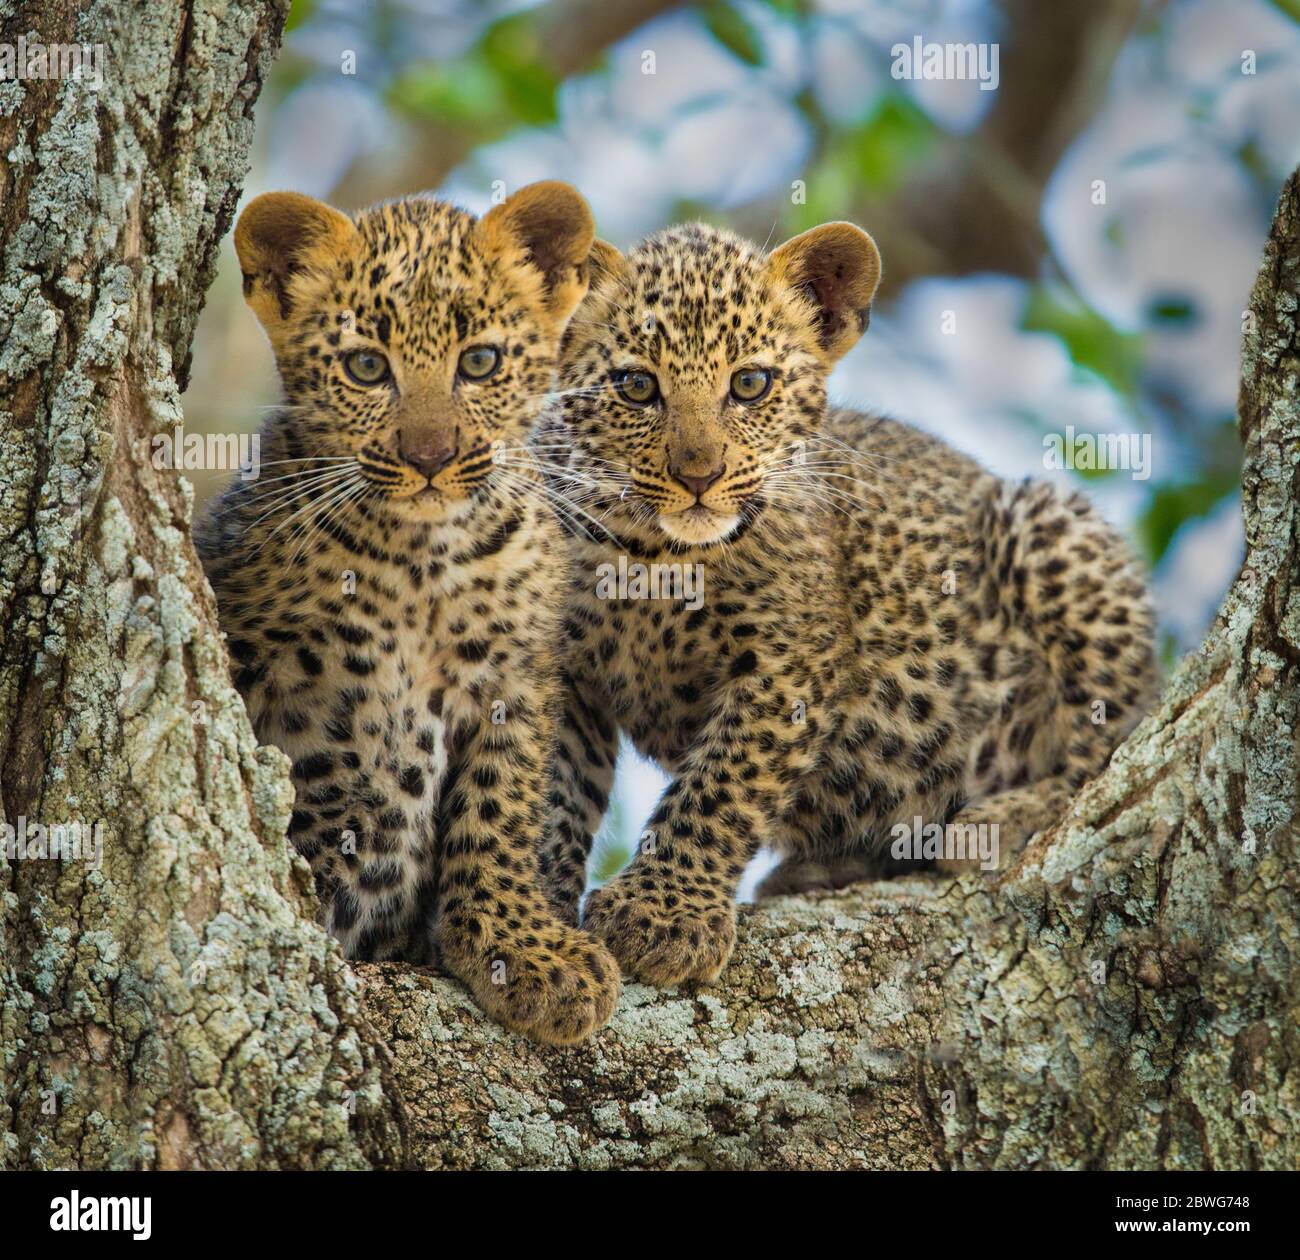 Léopard (Panthera pardus), petits arbres, Parc national du Serengeti, Tanzanie, Afrique, Afrique Banque D'Images